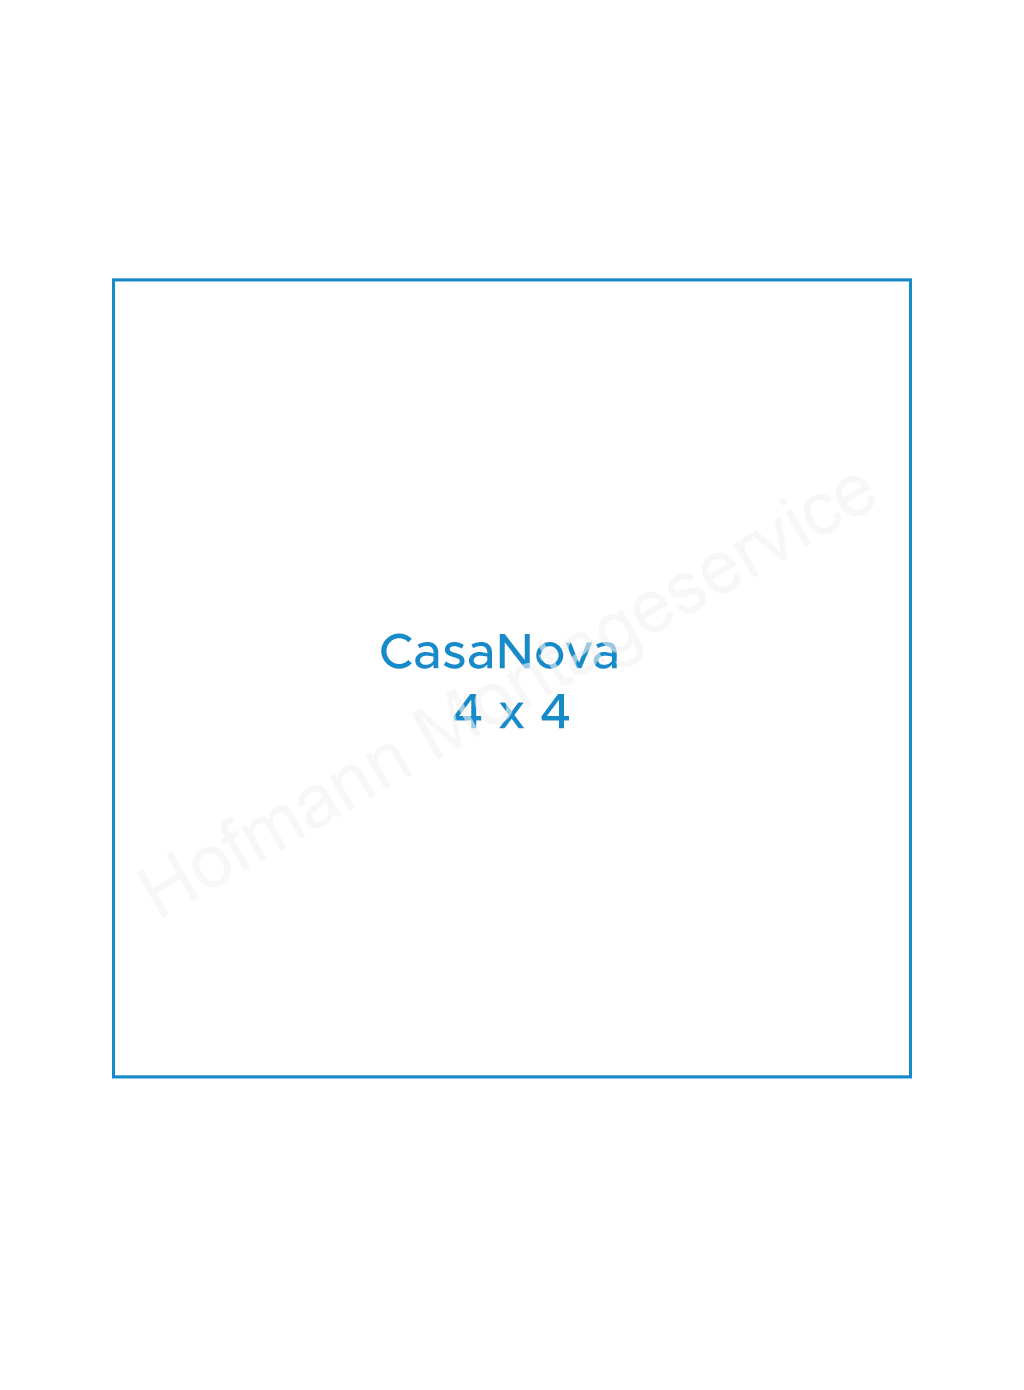 CasaNova 4x4